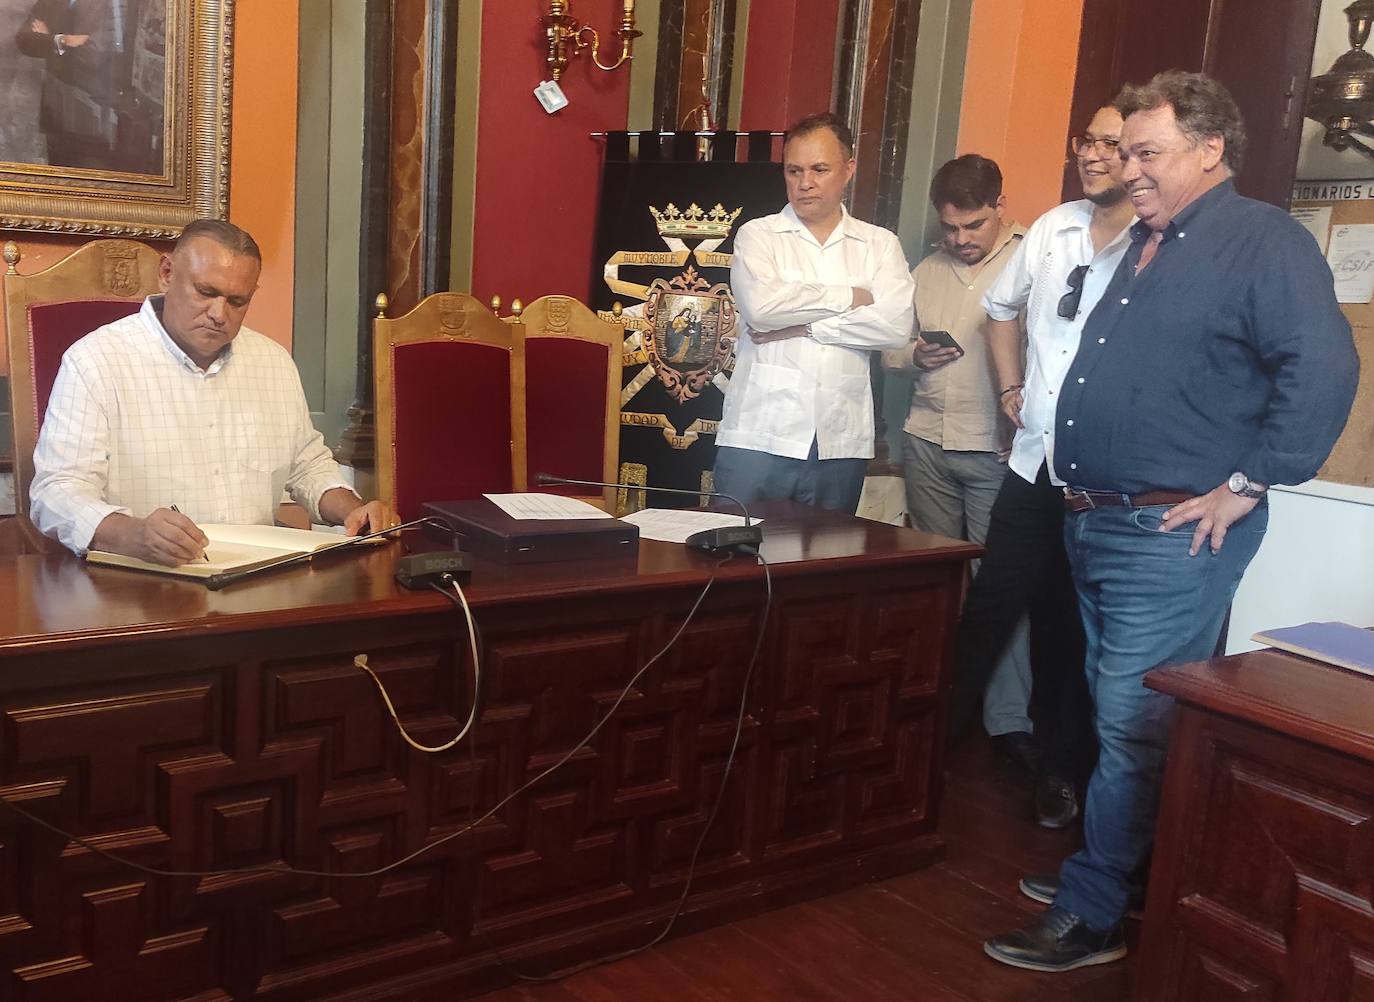 El alcalde de Trujillo de Honduras firmando en el libro de honor de la ciudad, ante la atenta mirada del alcalde anfritrión 